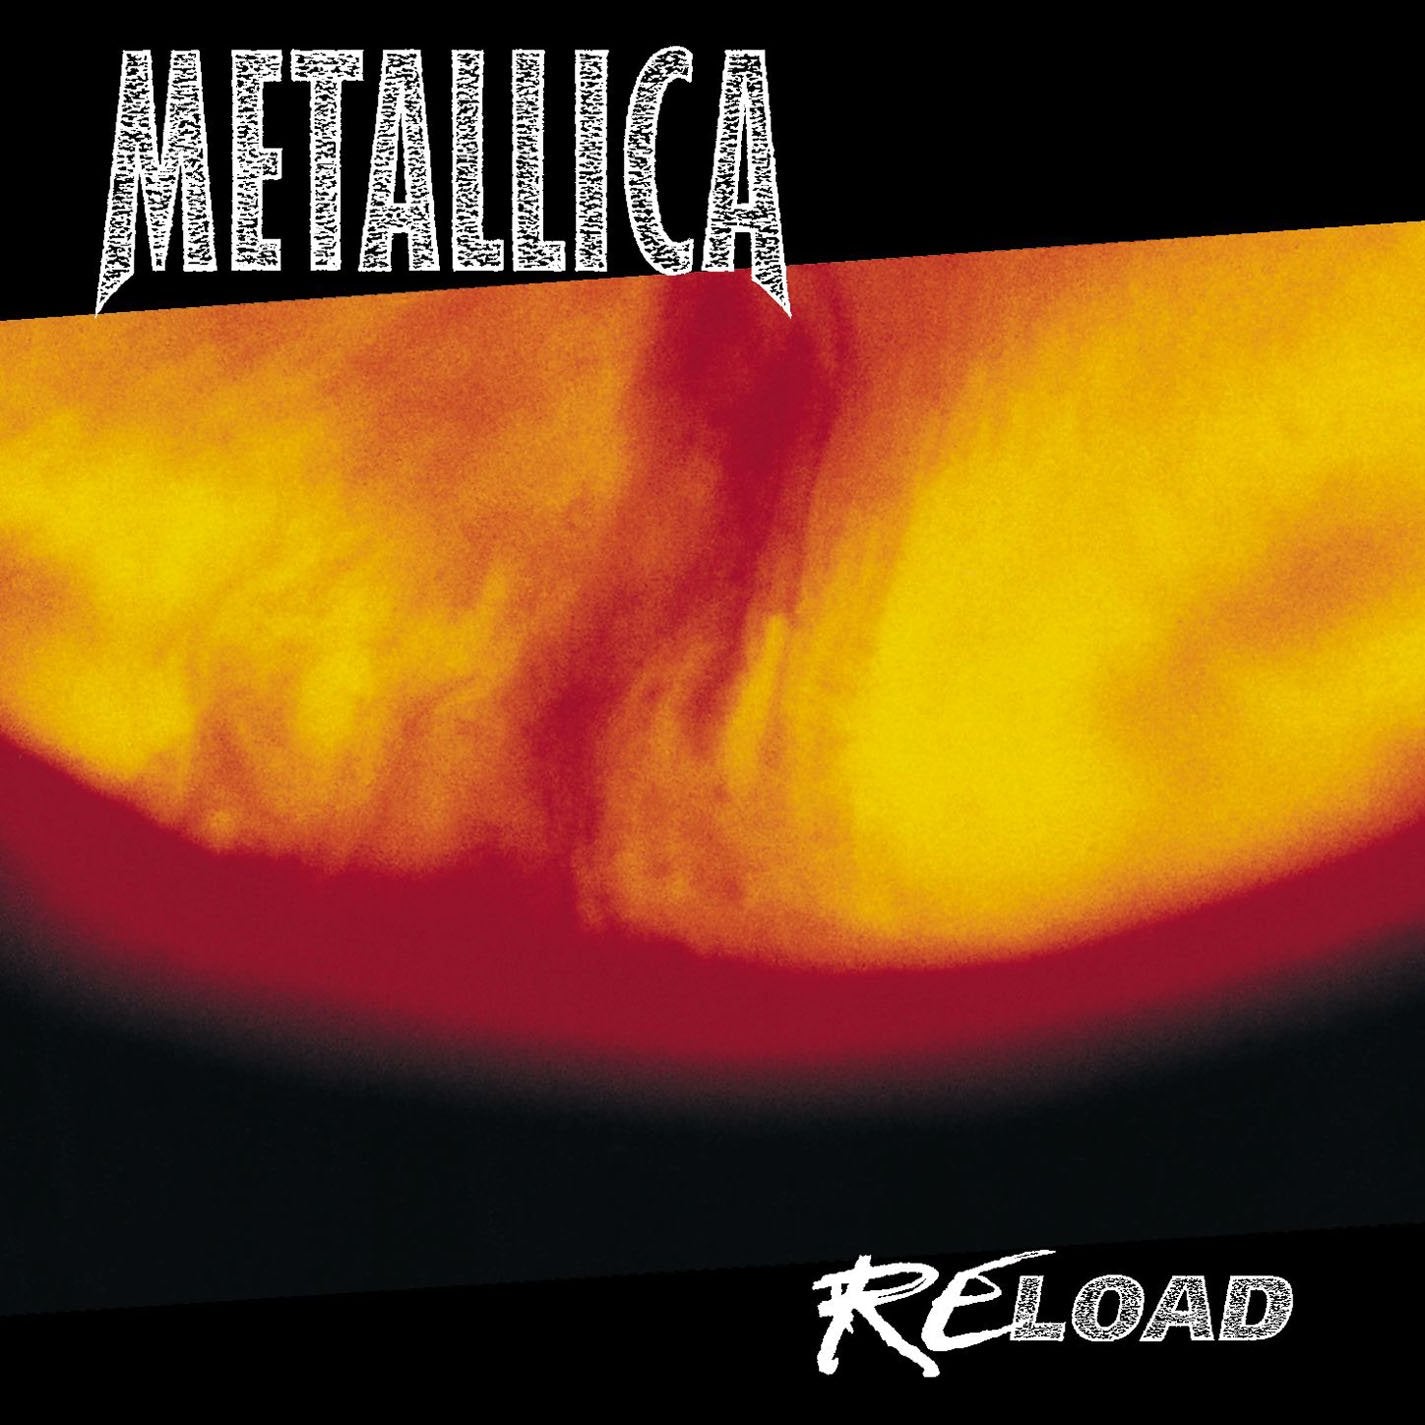 METALLICA - RELOAD Vinyl LP